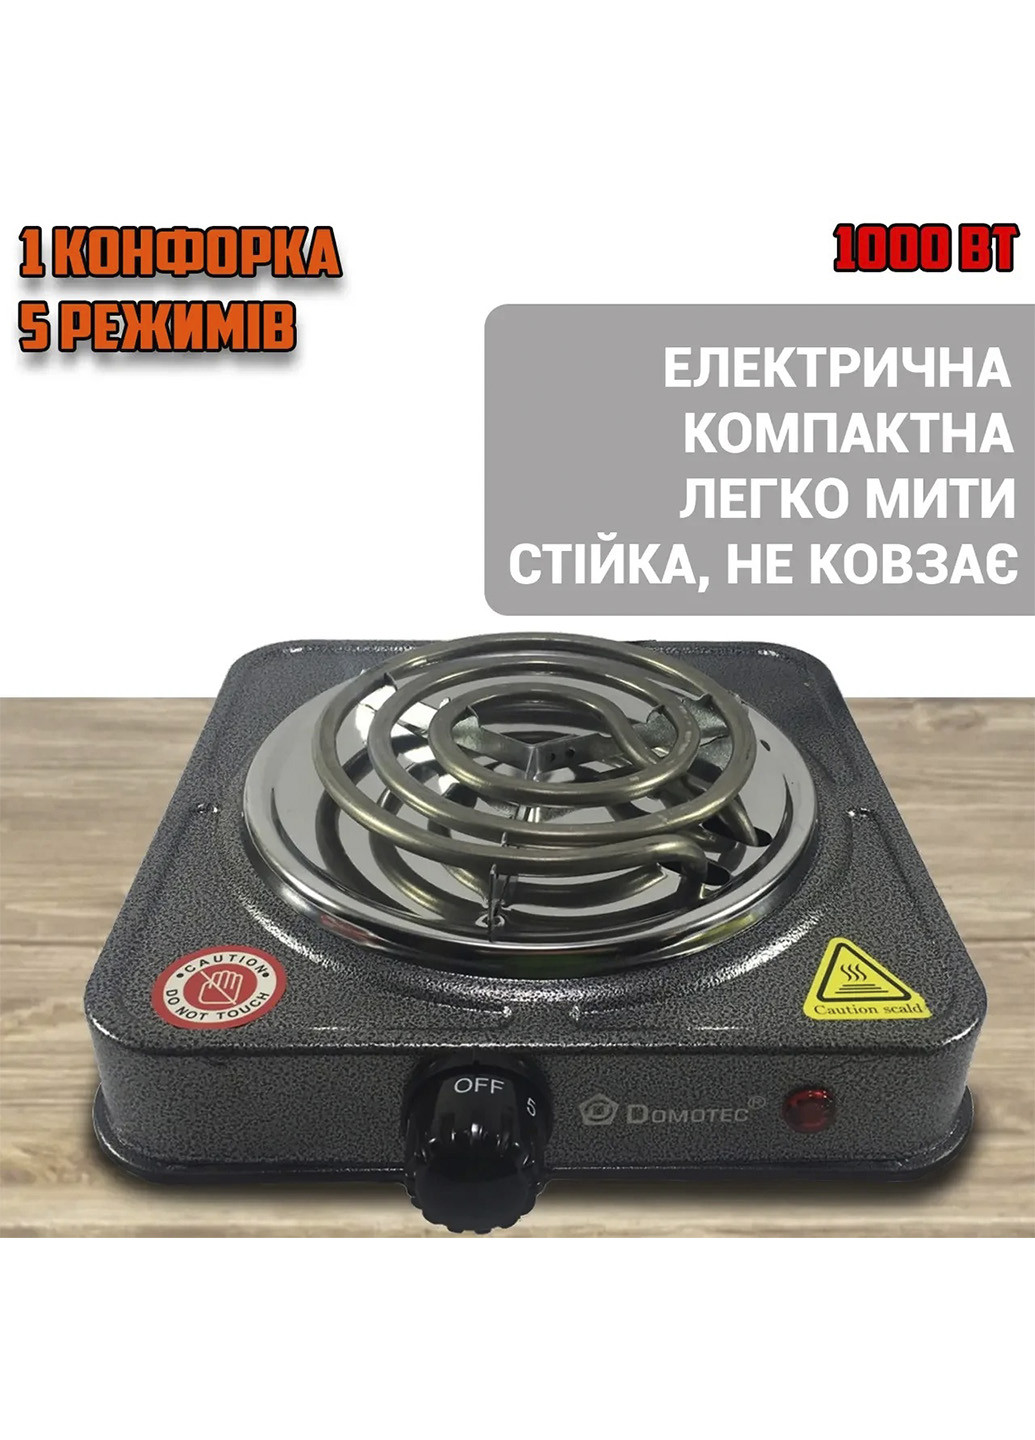 Электрическая настольная плита 1 конфорка 5821MS со спиральным теном 1кВт, 5 режимов нагрева KIVI Domotec (255278775)